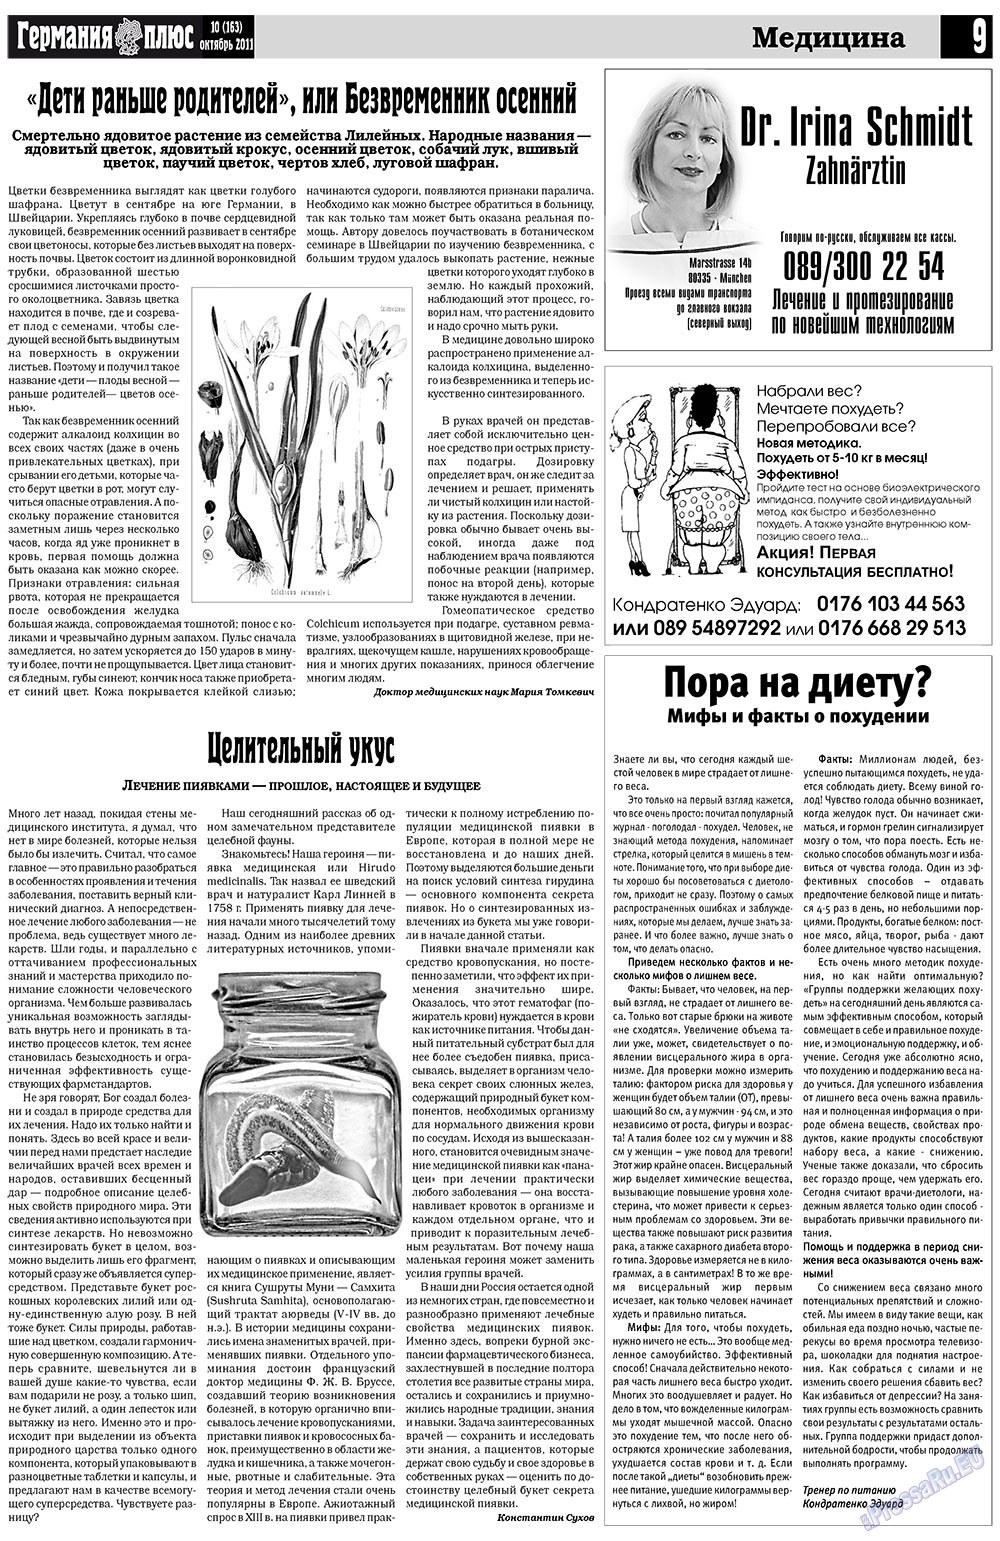 Германия плюс, газета. 2011 №10 стр.9